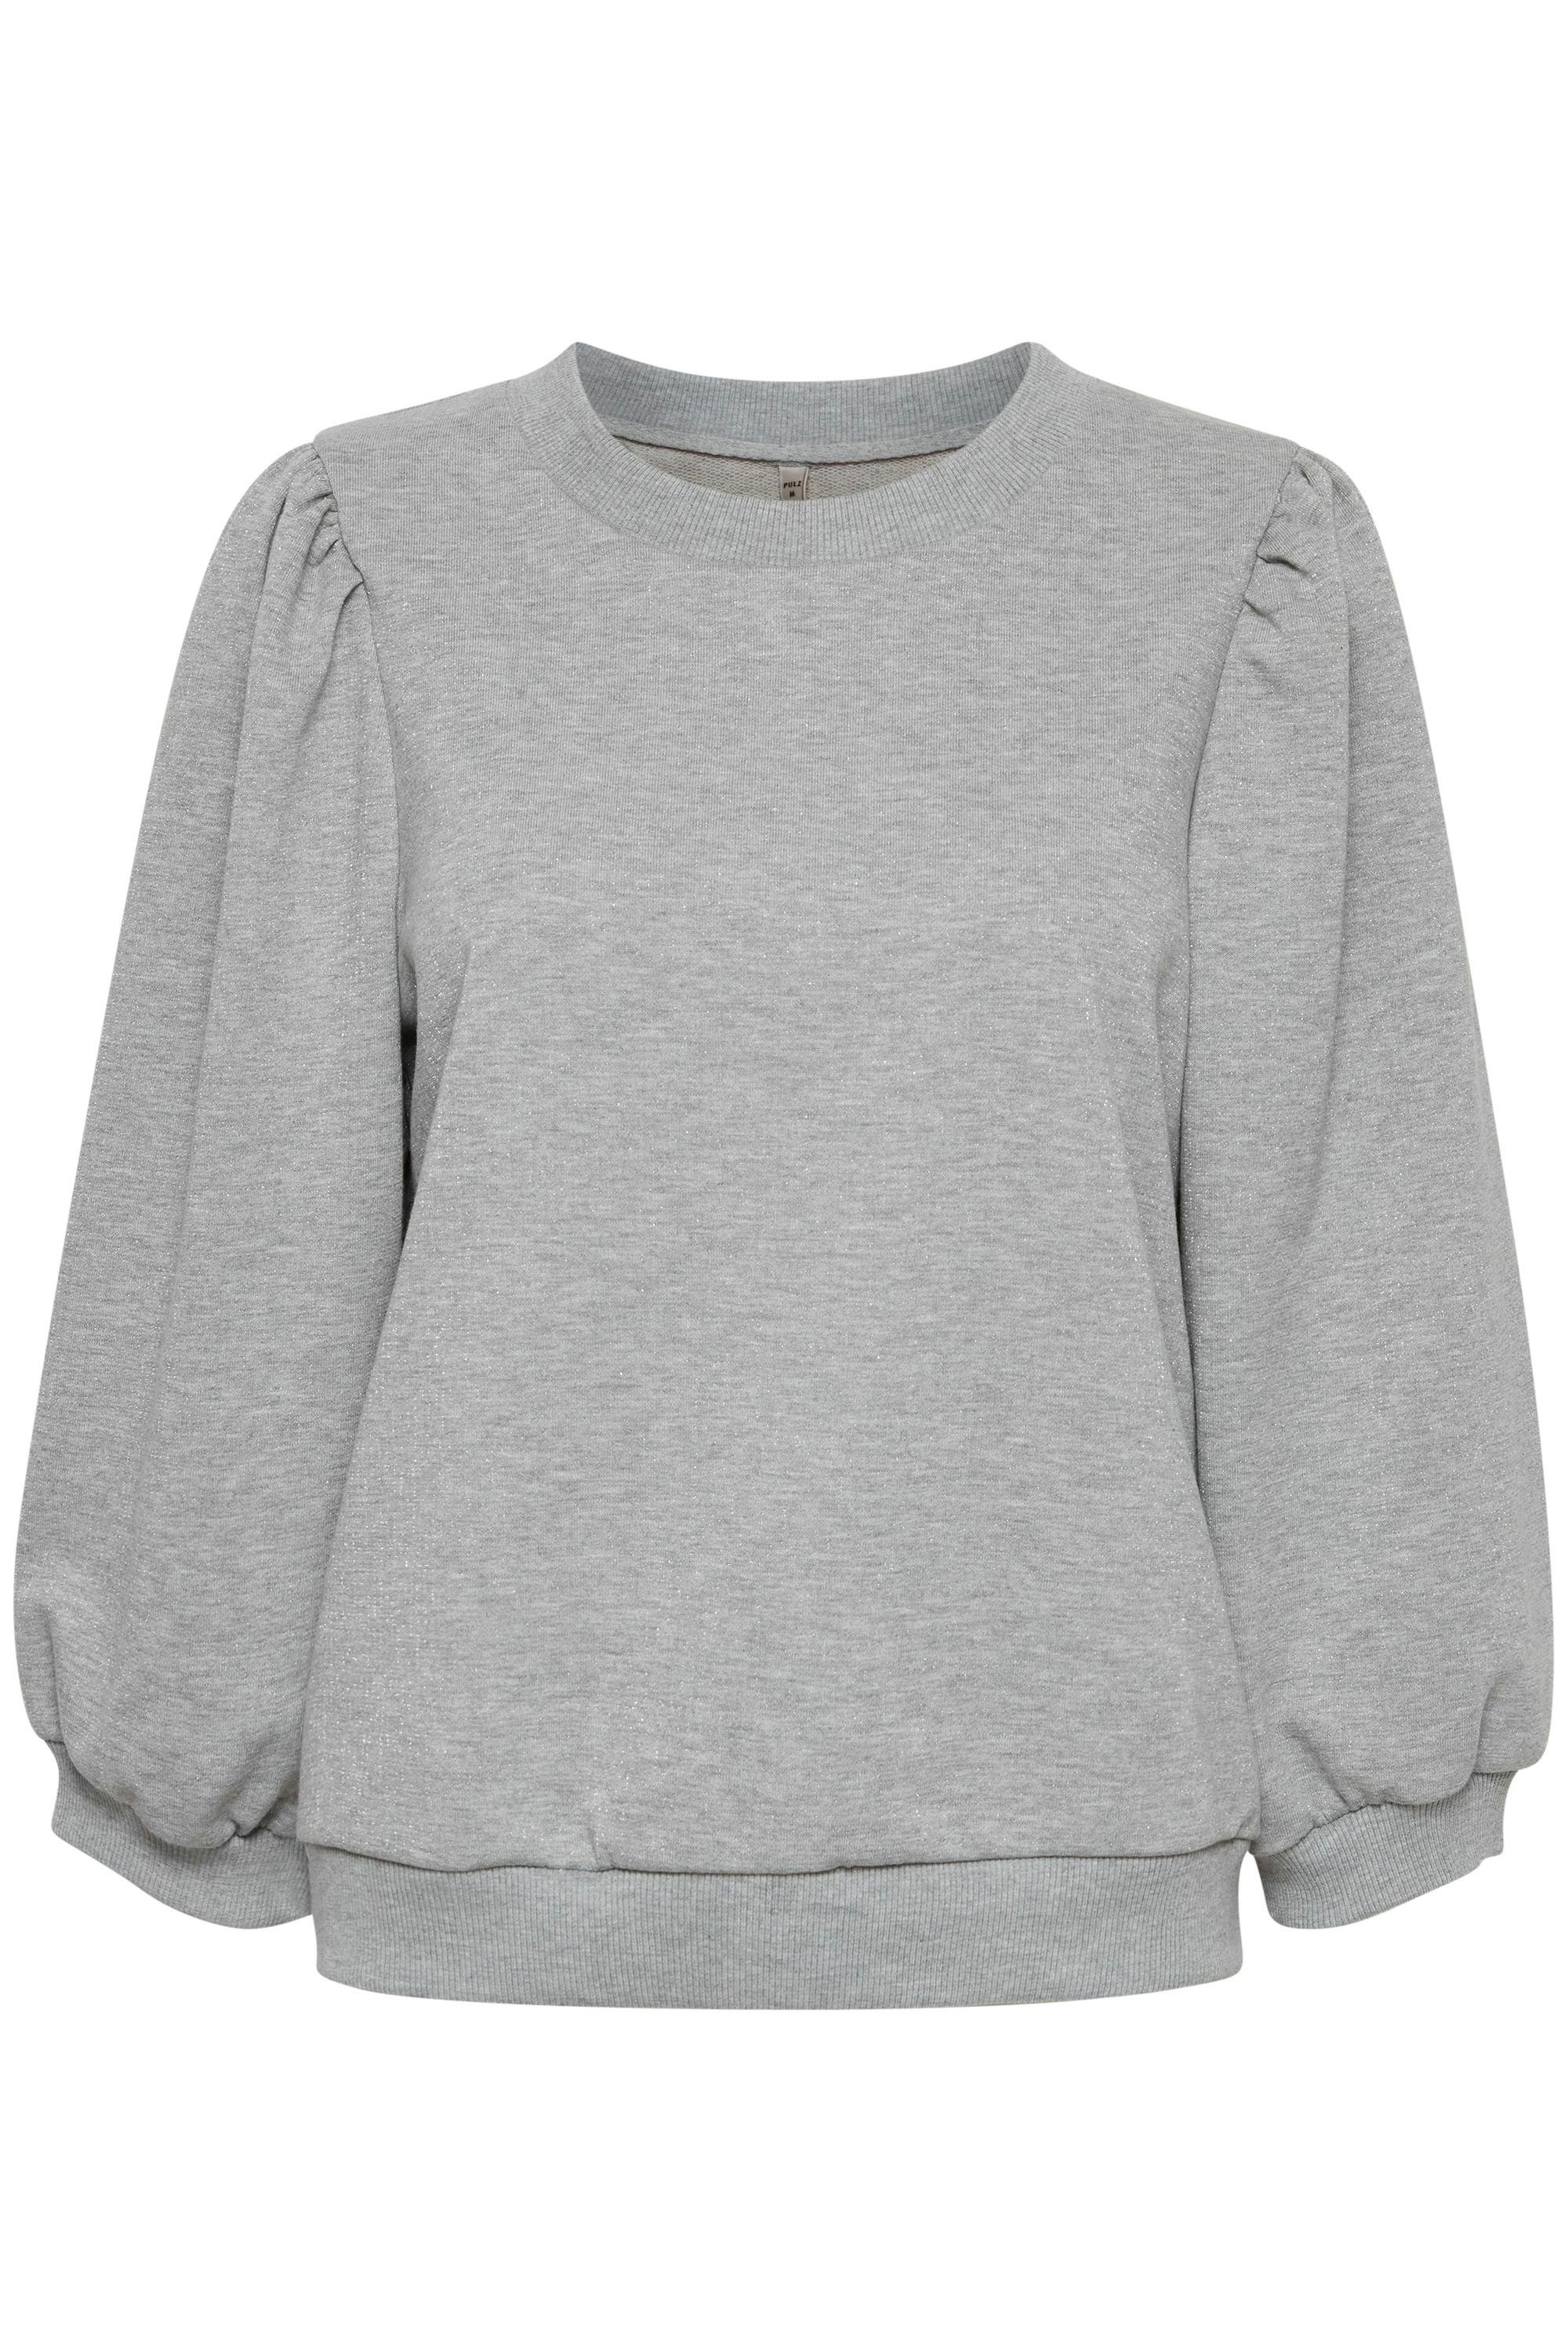 Pulz Jeans Sweatshirt PZSOFIA - Ärmeln (1802011) mit 50206259 Grey Melange Medium Schöner Sweater 3/4